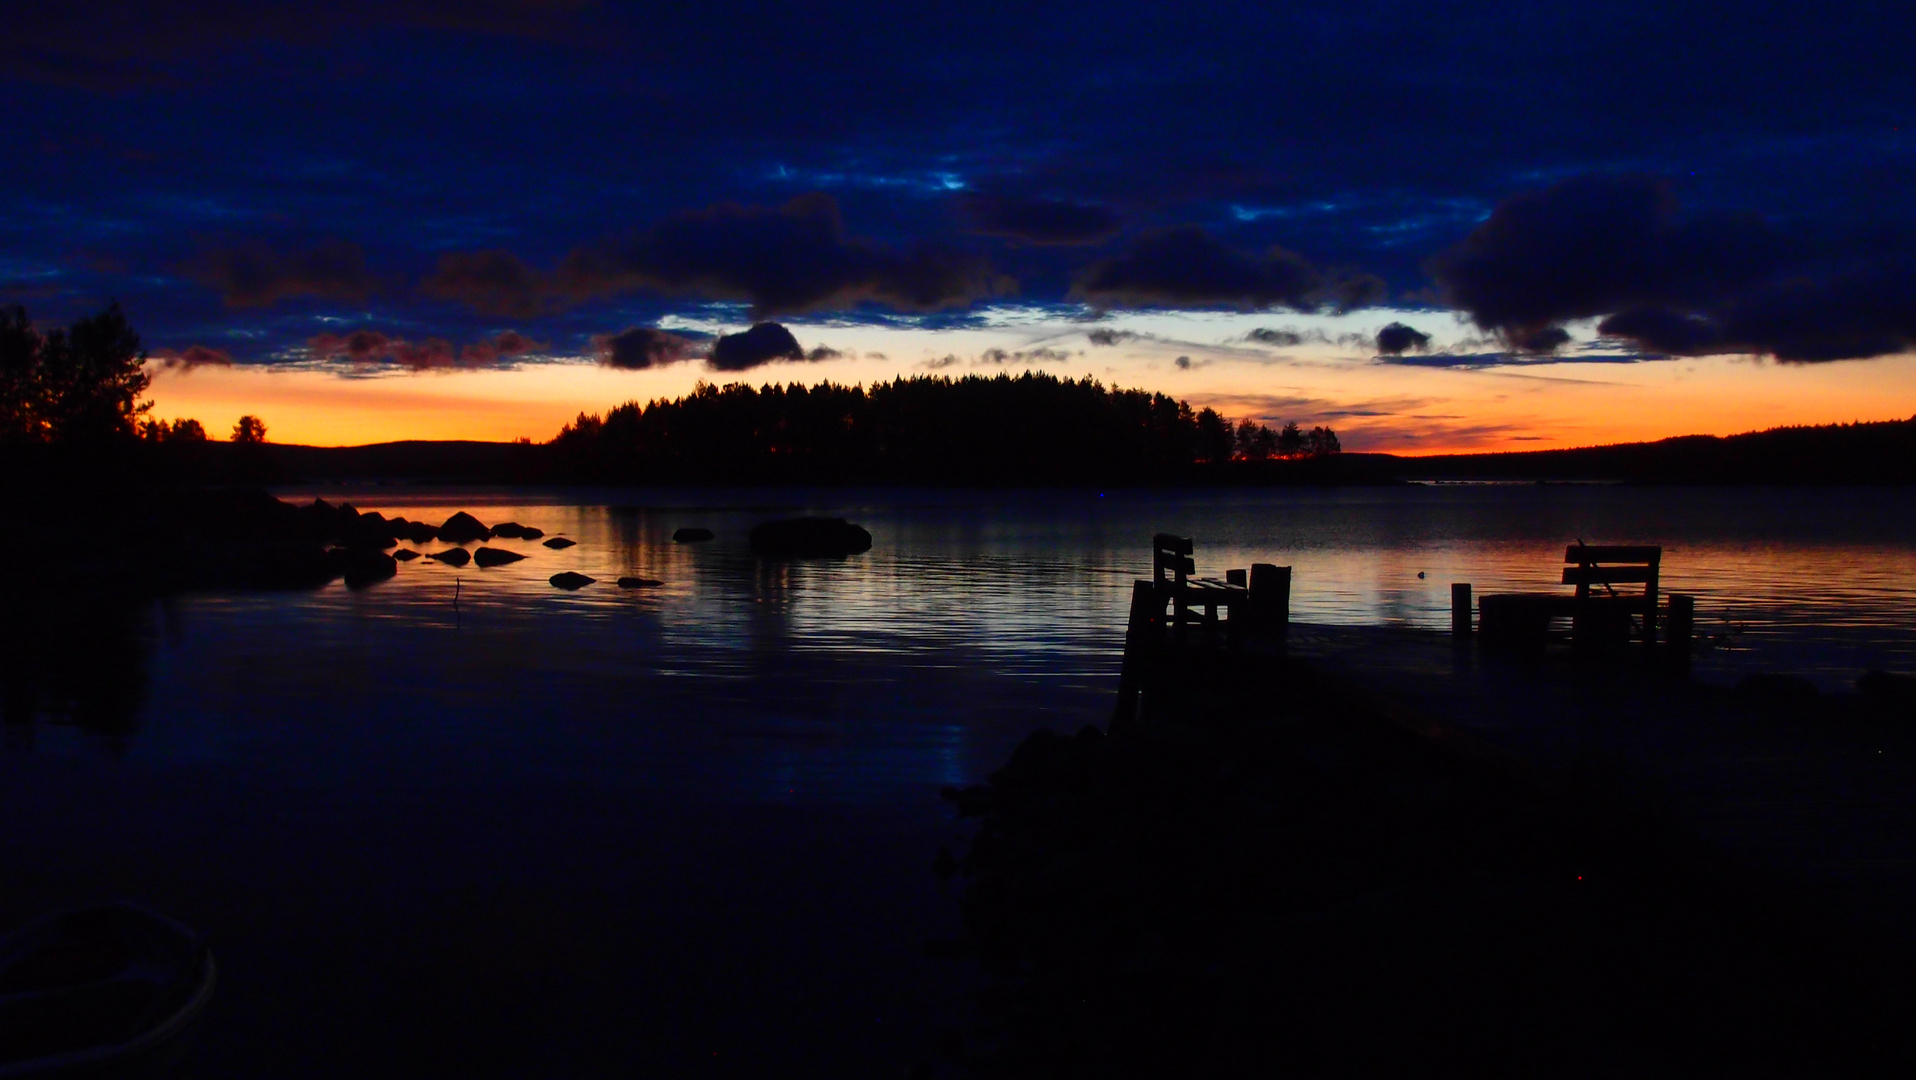 Sunset on the lake Pielenen, Finland